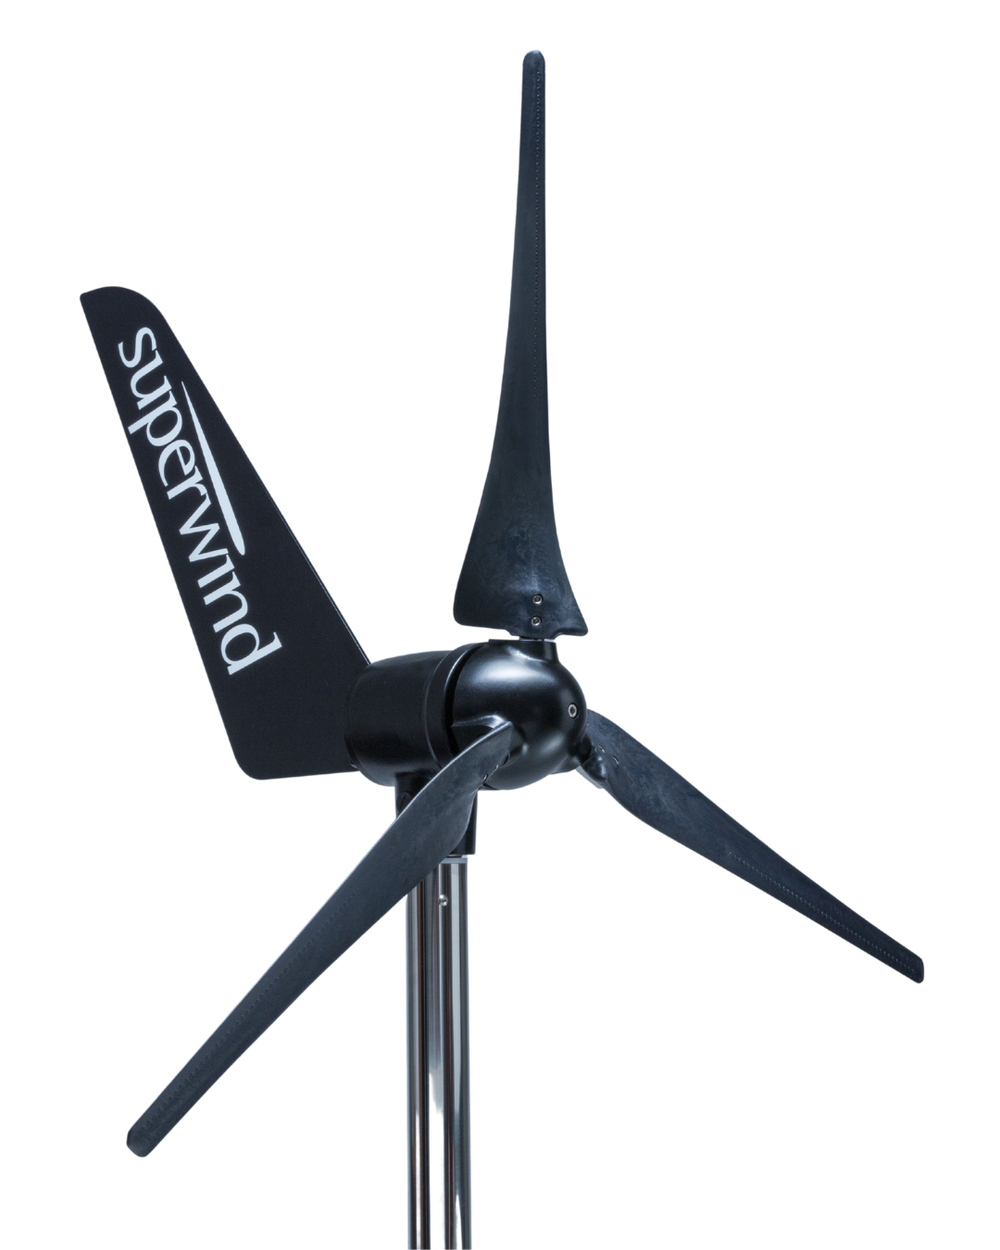 Superwind 350 II Windgenerator in schwarz mit schwarzen Rotorblättern.